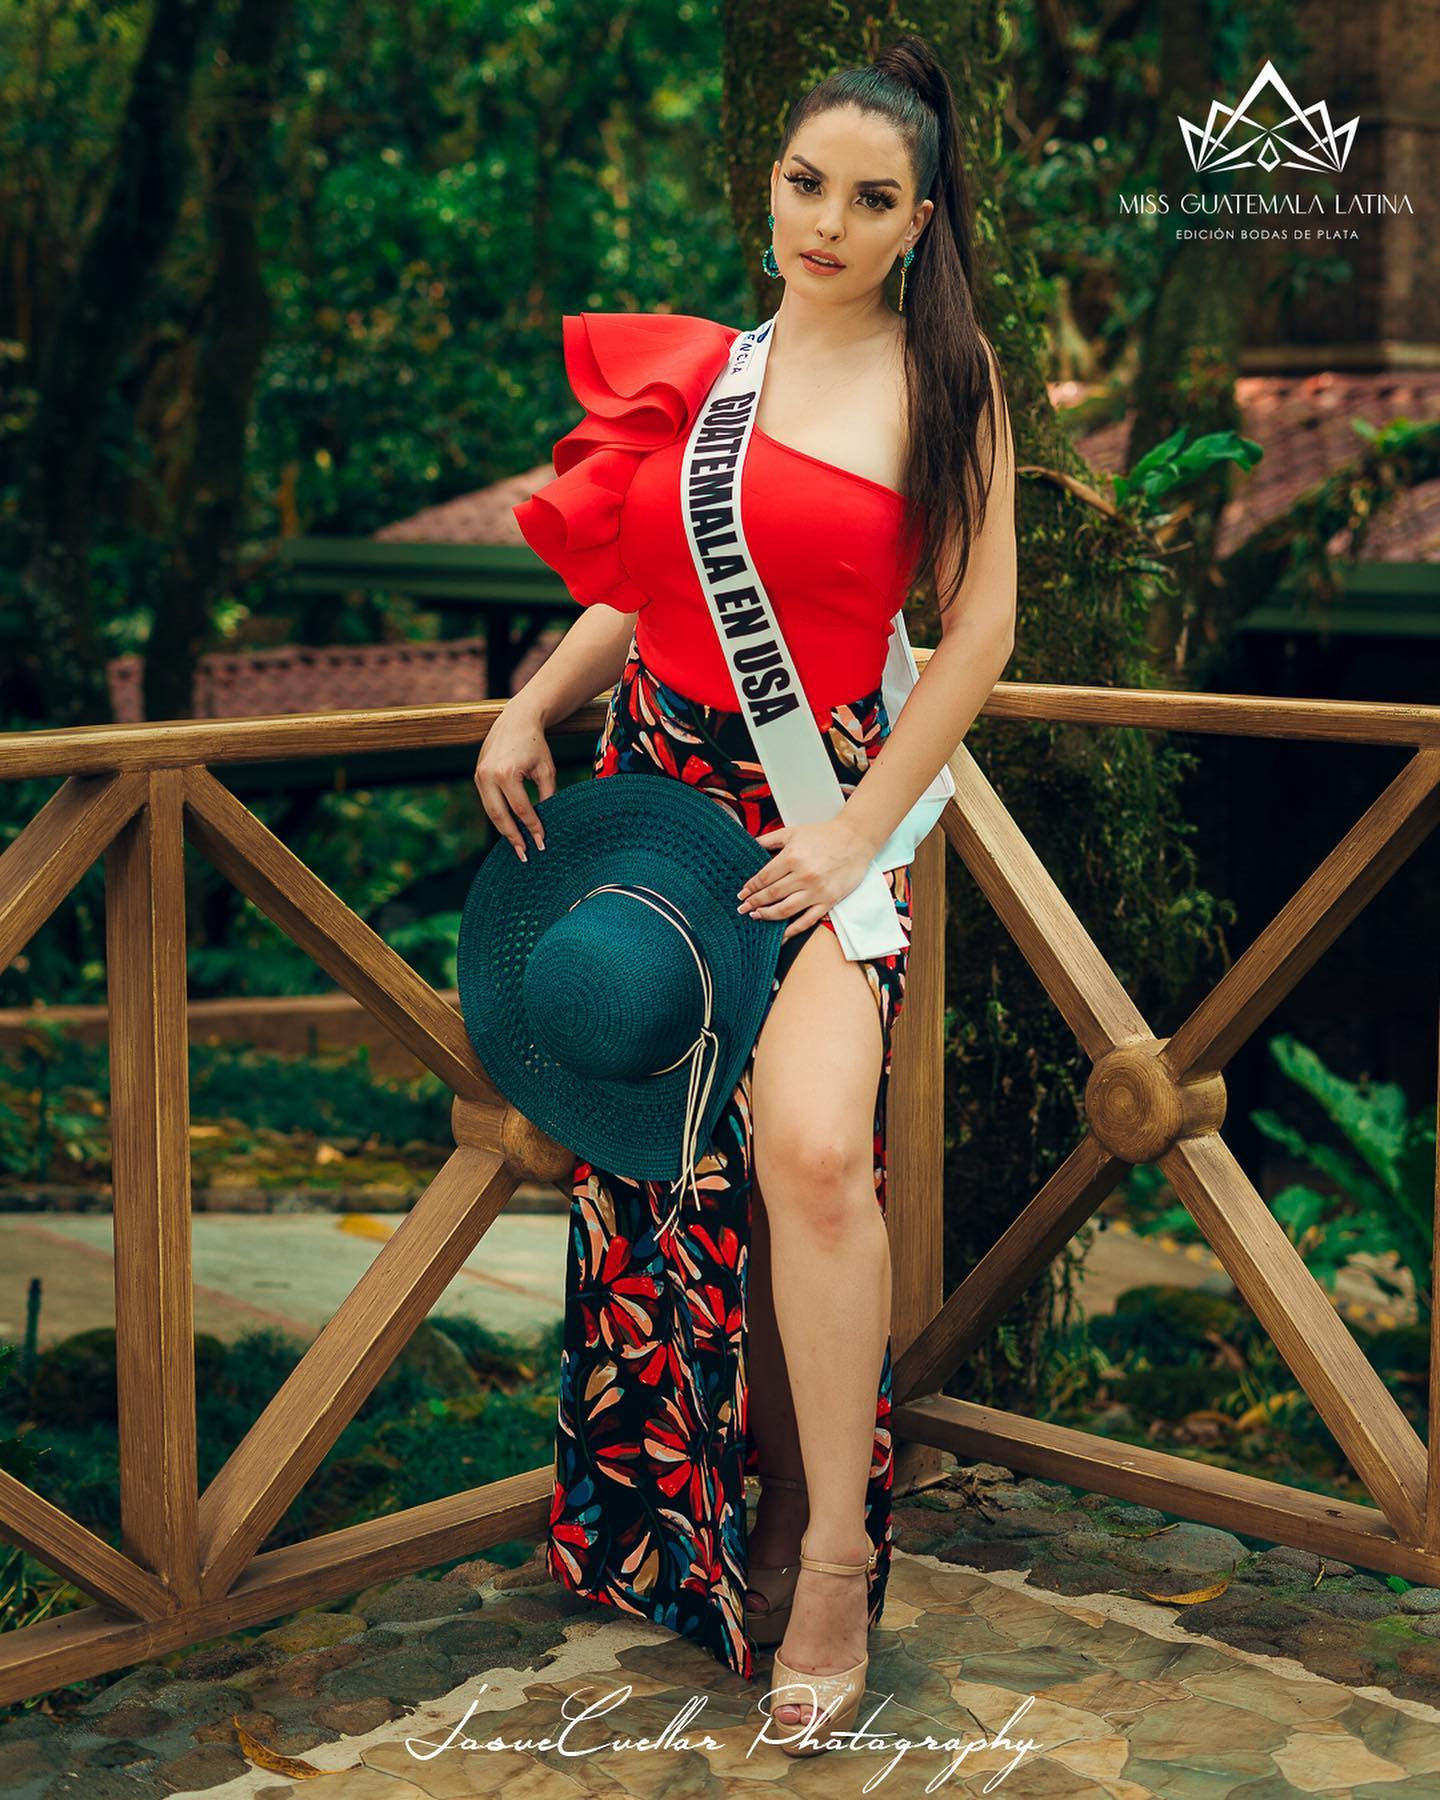 Latina - candidatas a miss guatemala latina 2021. final: 30 de abril. - Página 8 BFwqzJ